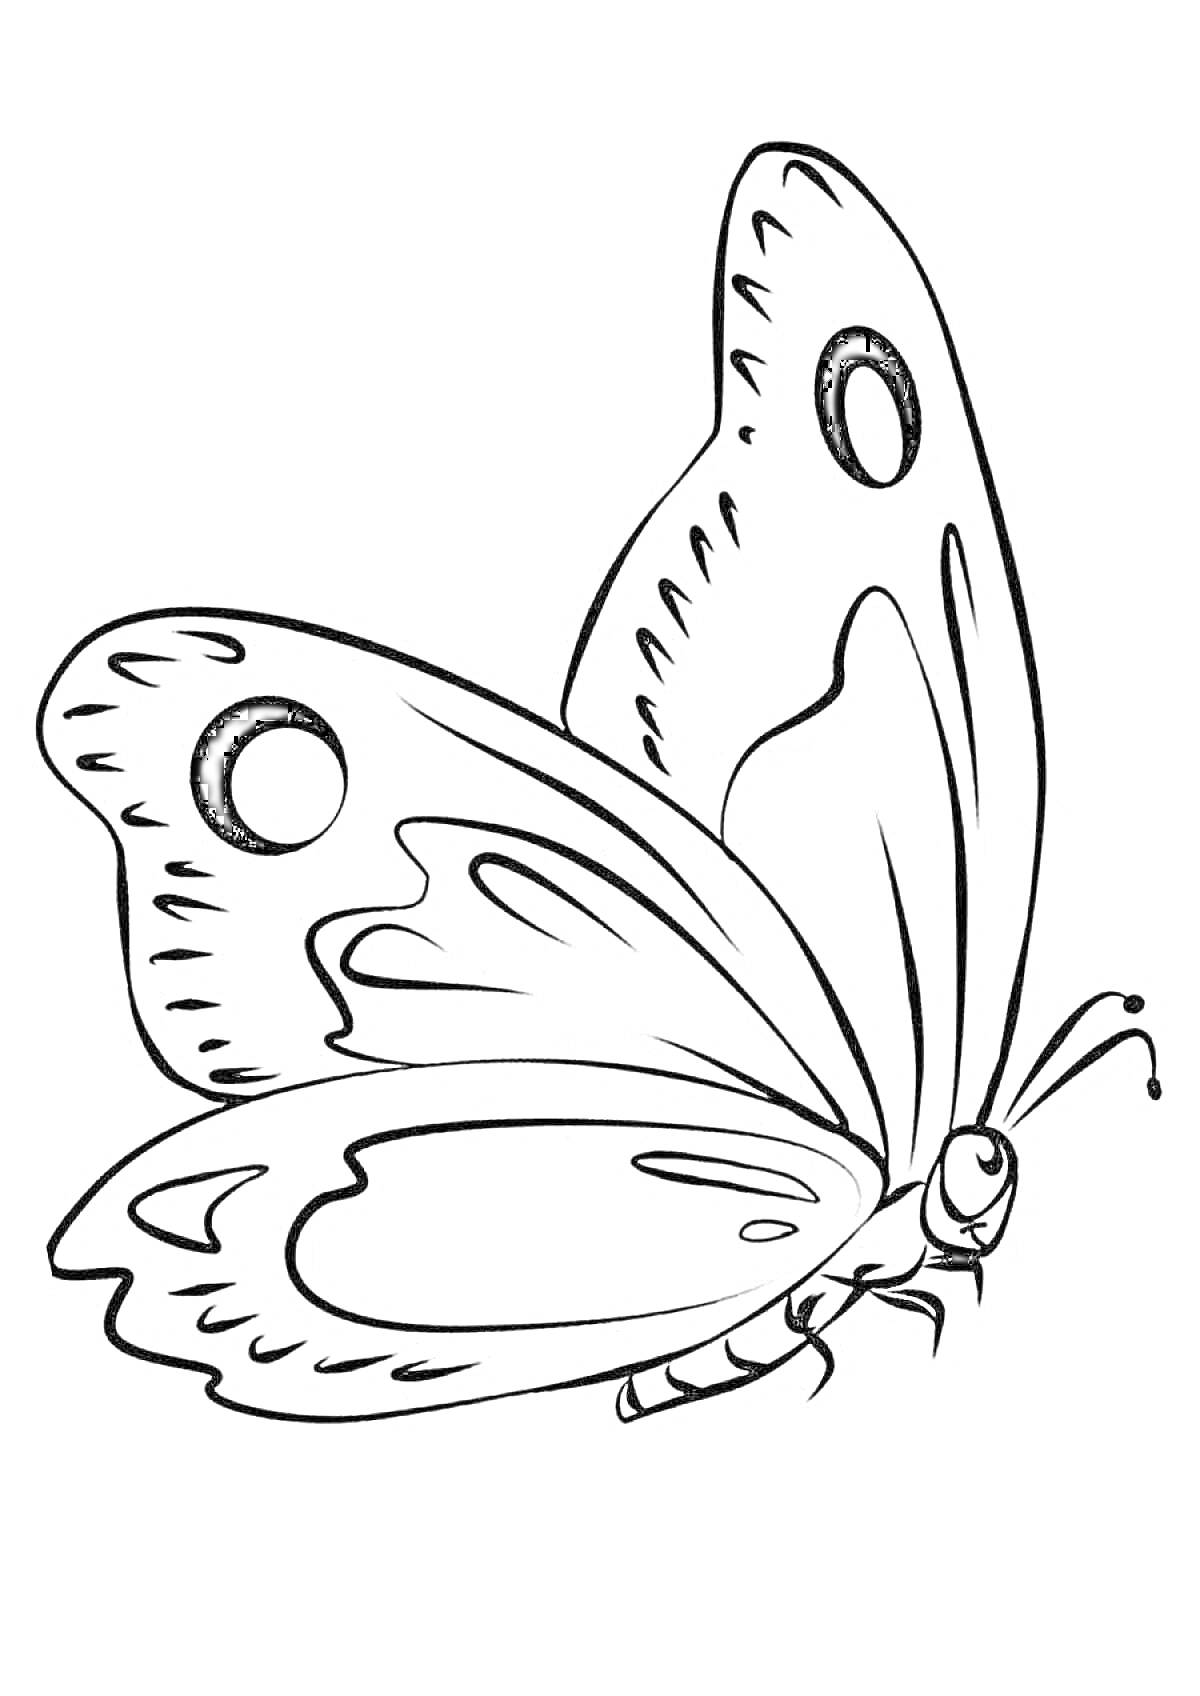 Раскраска бабочка с узорами на крыльях, антенны, детская раскраска